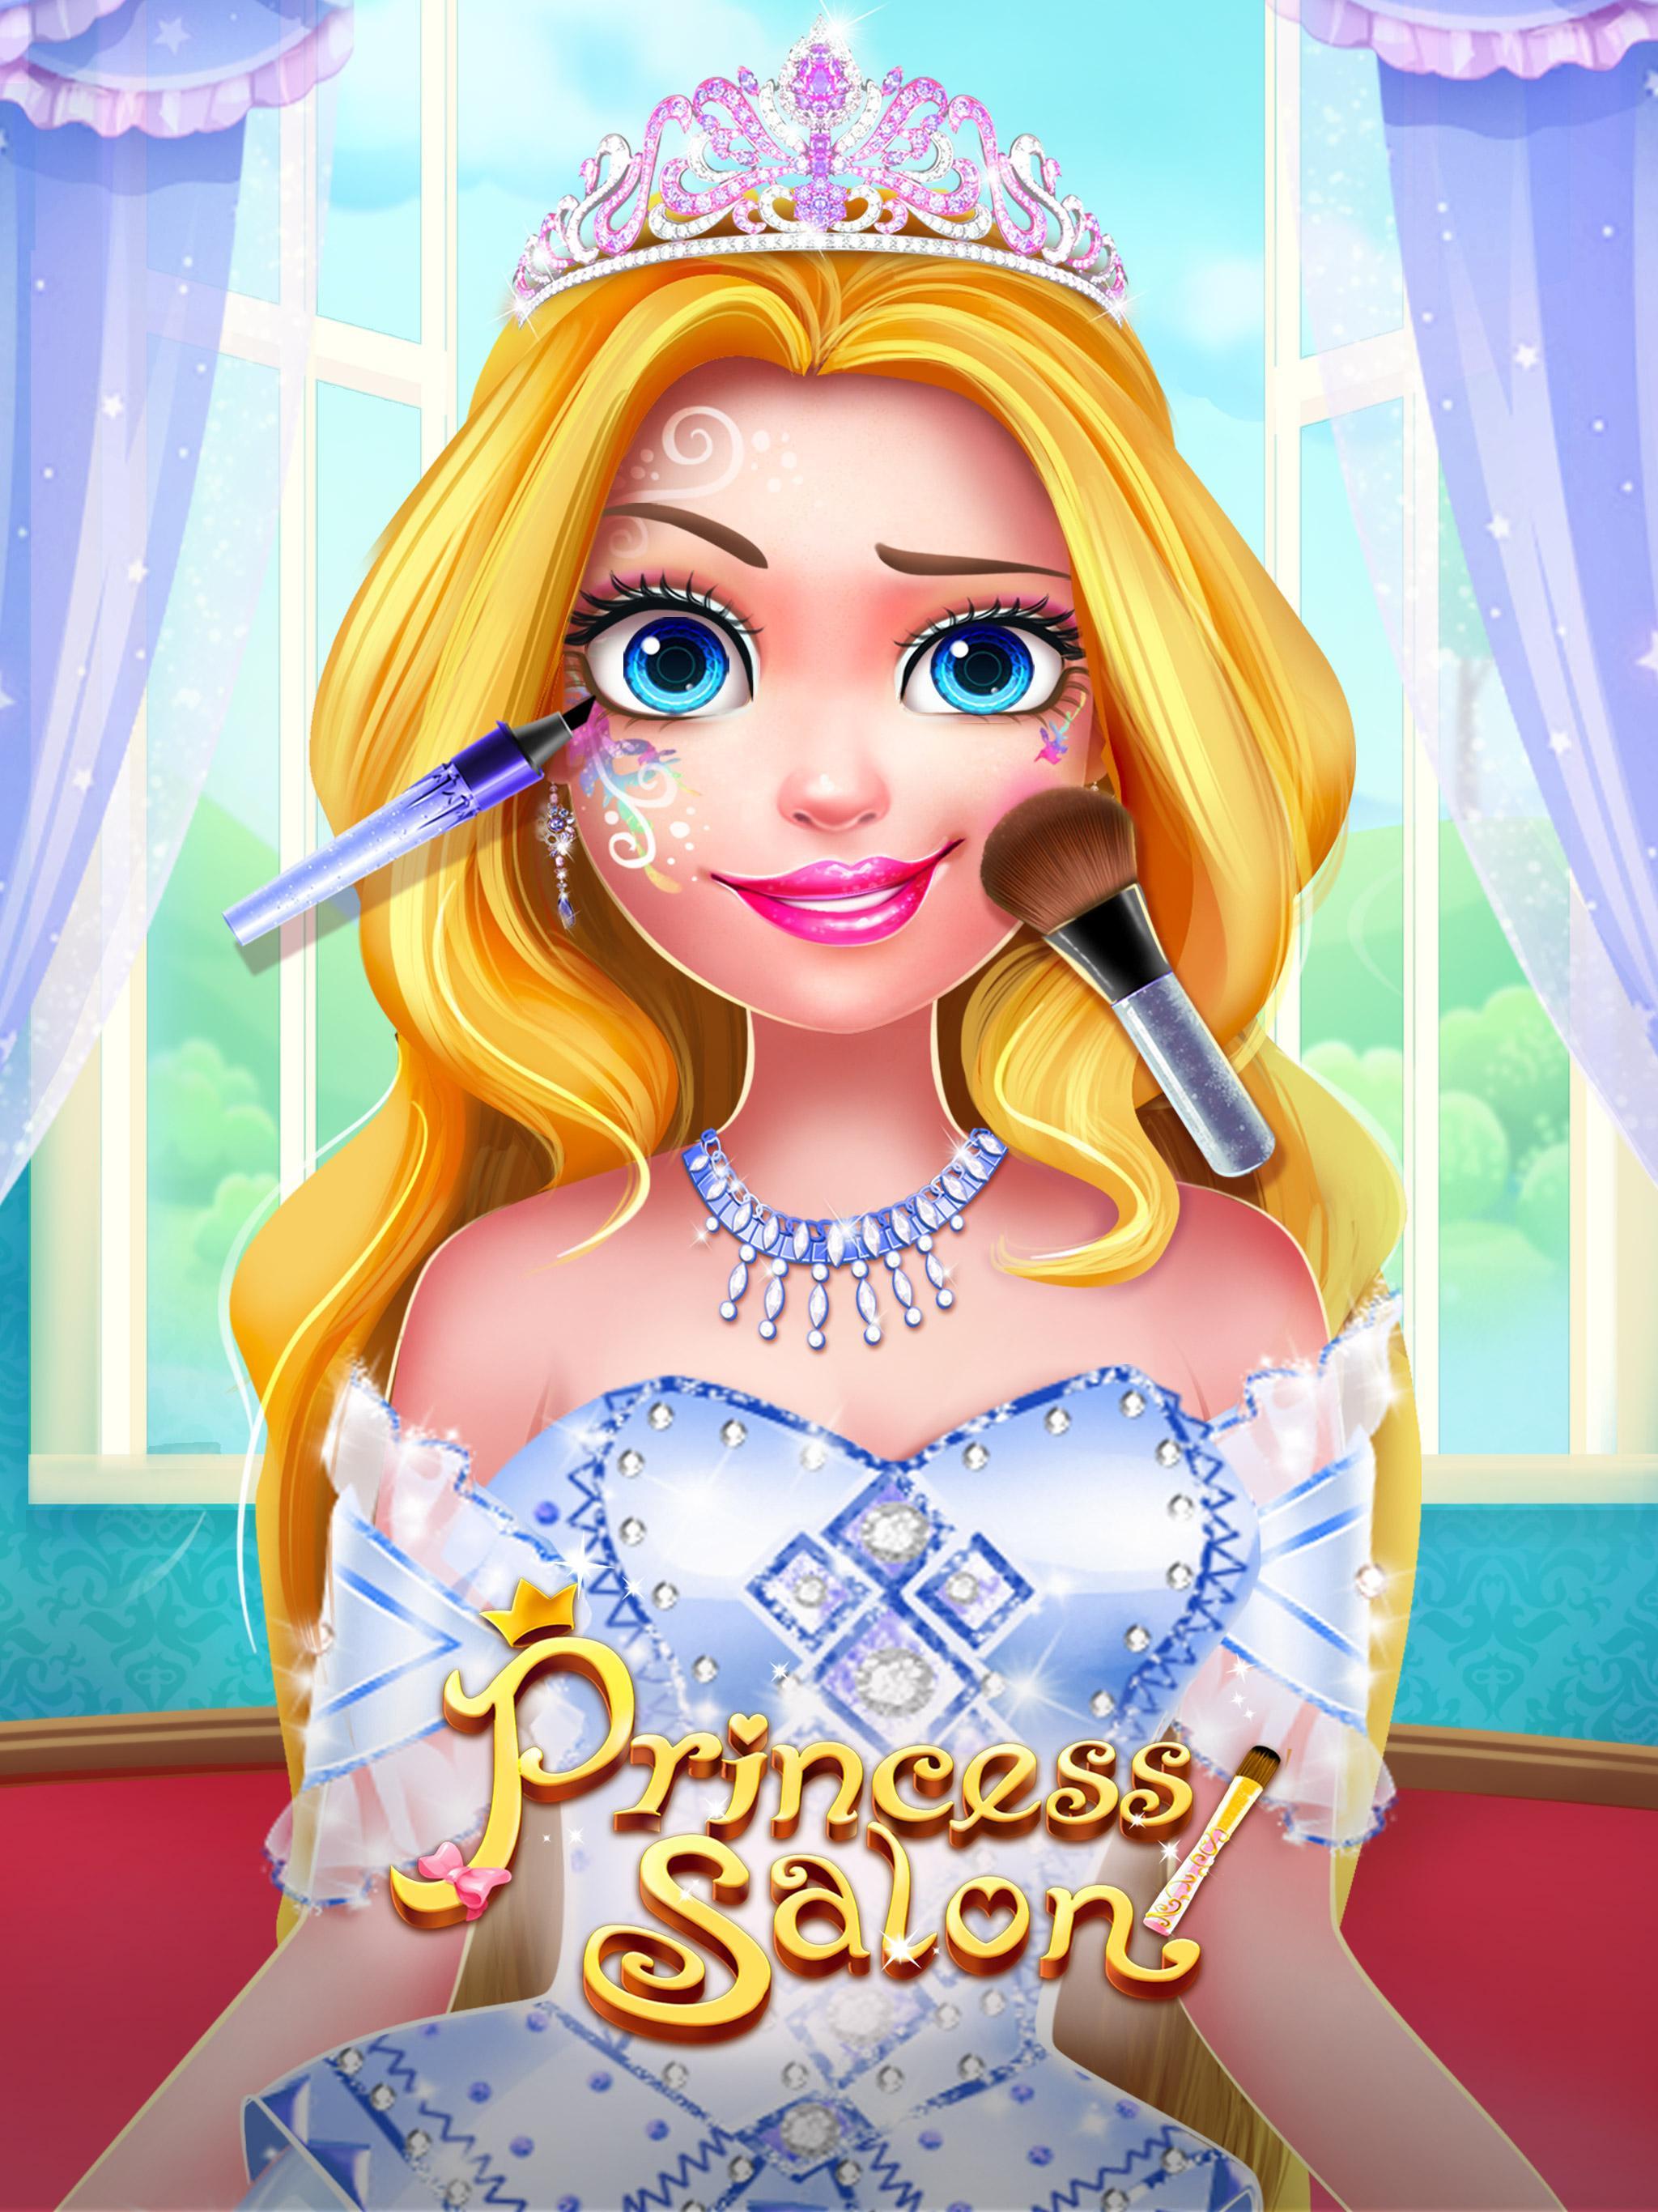 Screenshot 1 of राजकुमारी सैलून 2 - लड़कियों का खेल 1.5